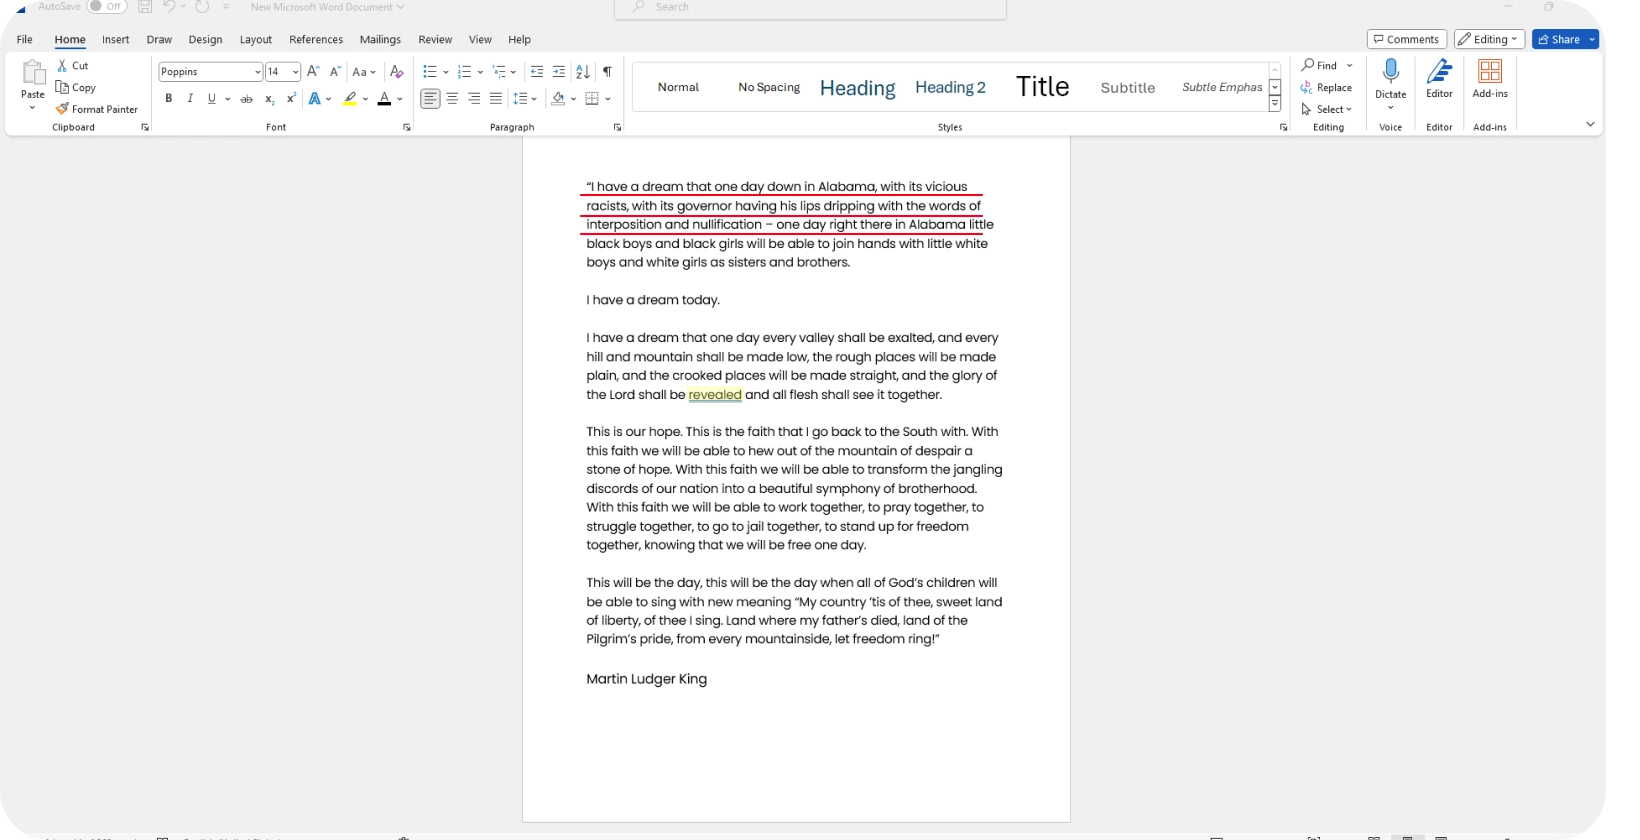 Microsoft Word Dokument mit einer Sprachtranskription, die die Effizienz der Diktierfunktion hervorhebt.